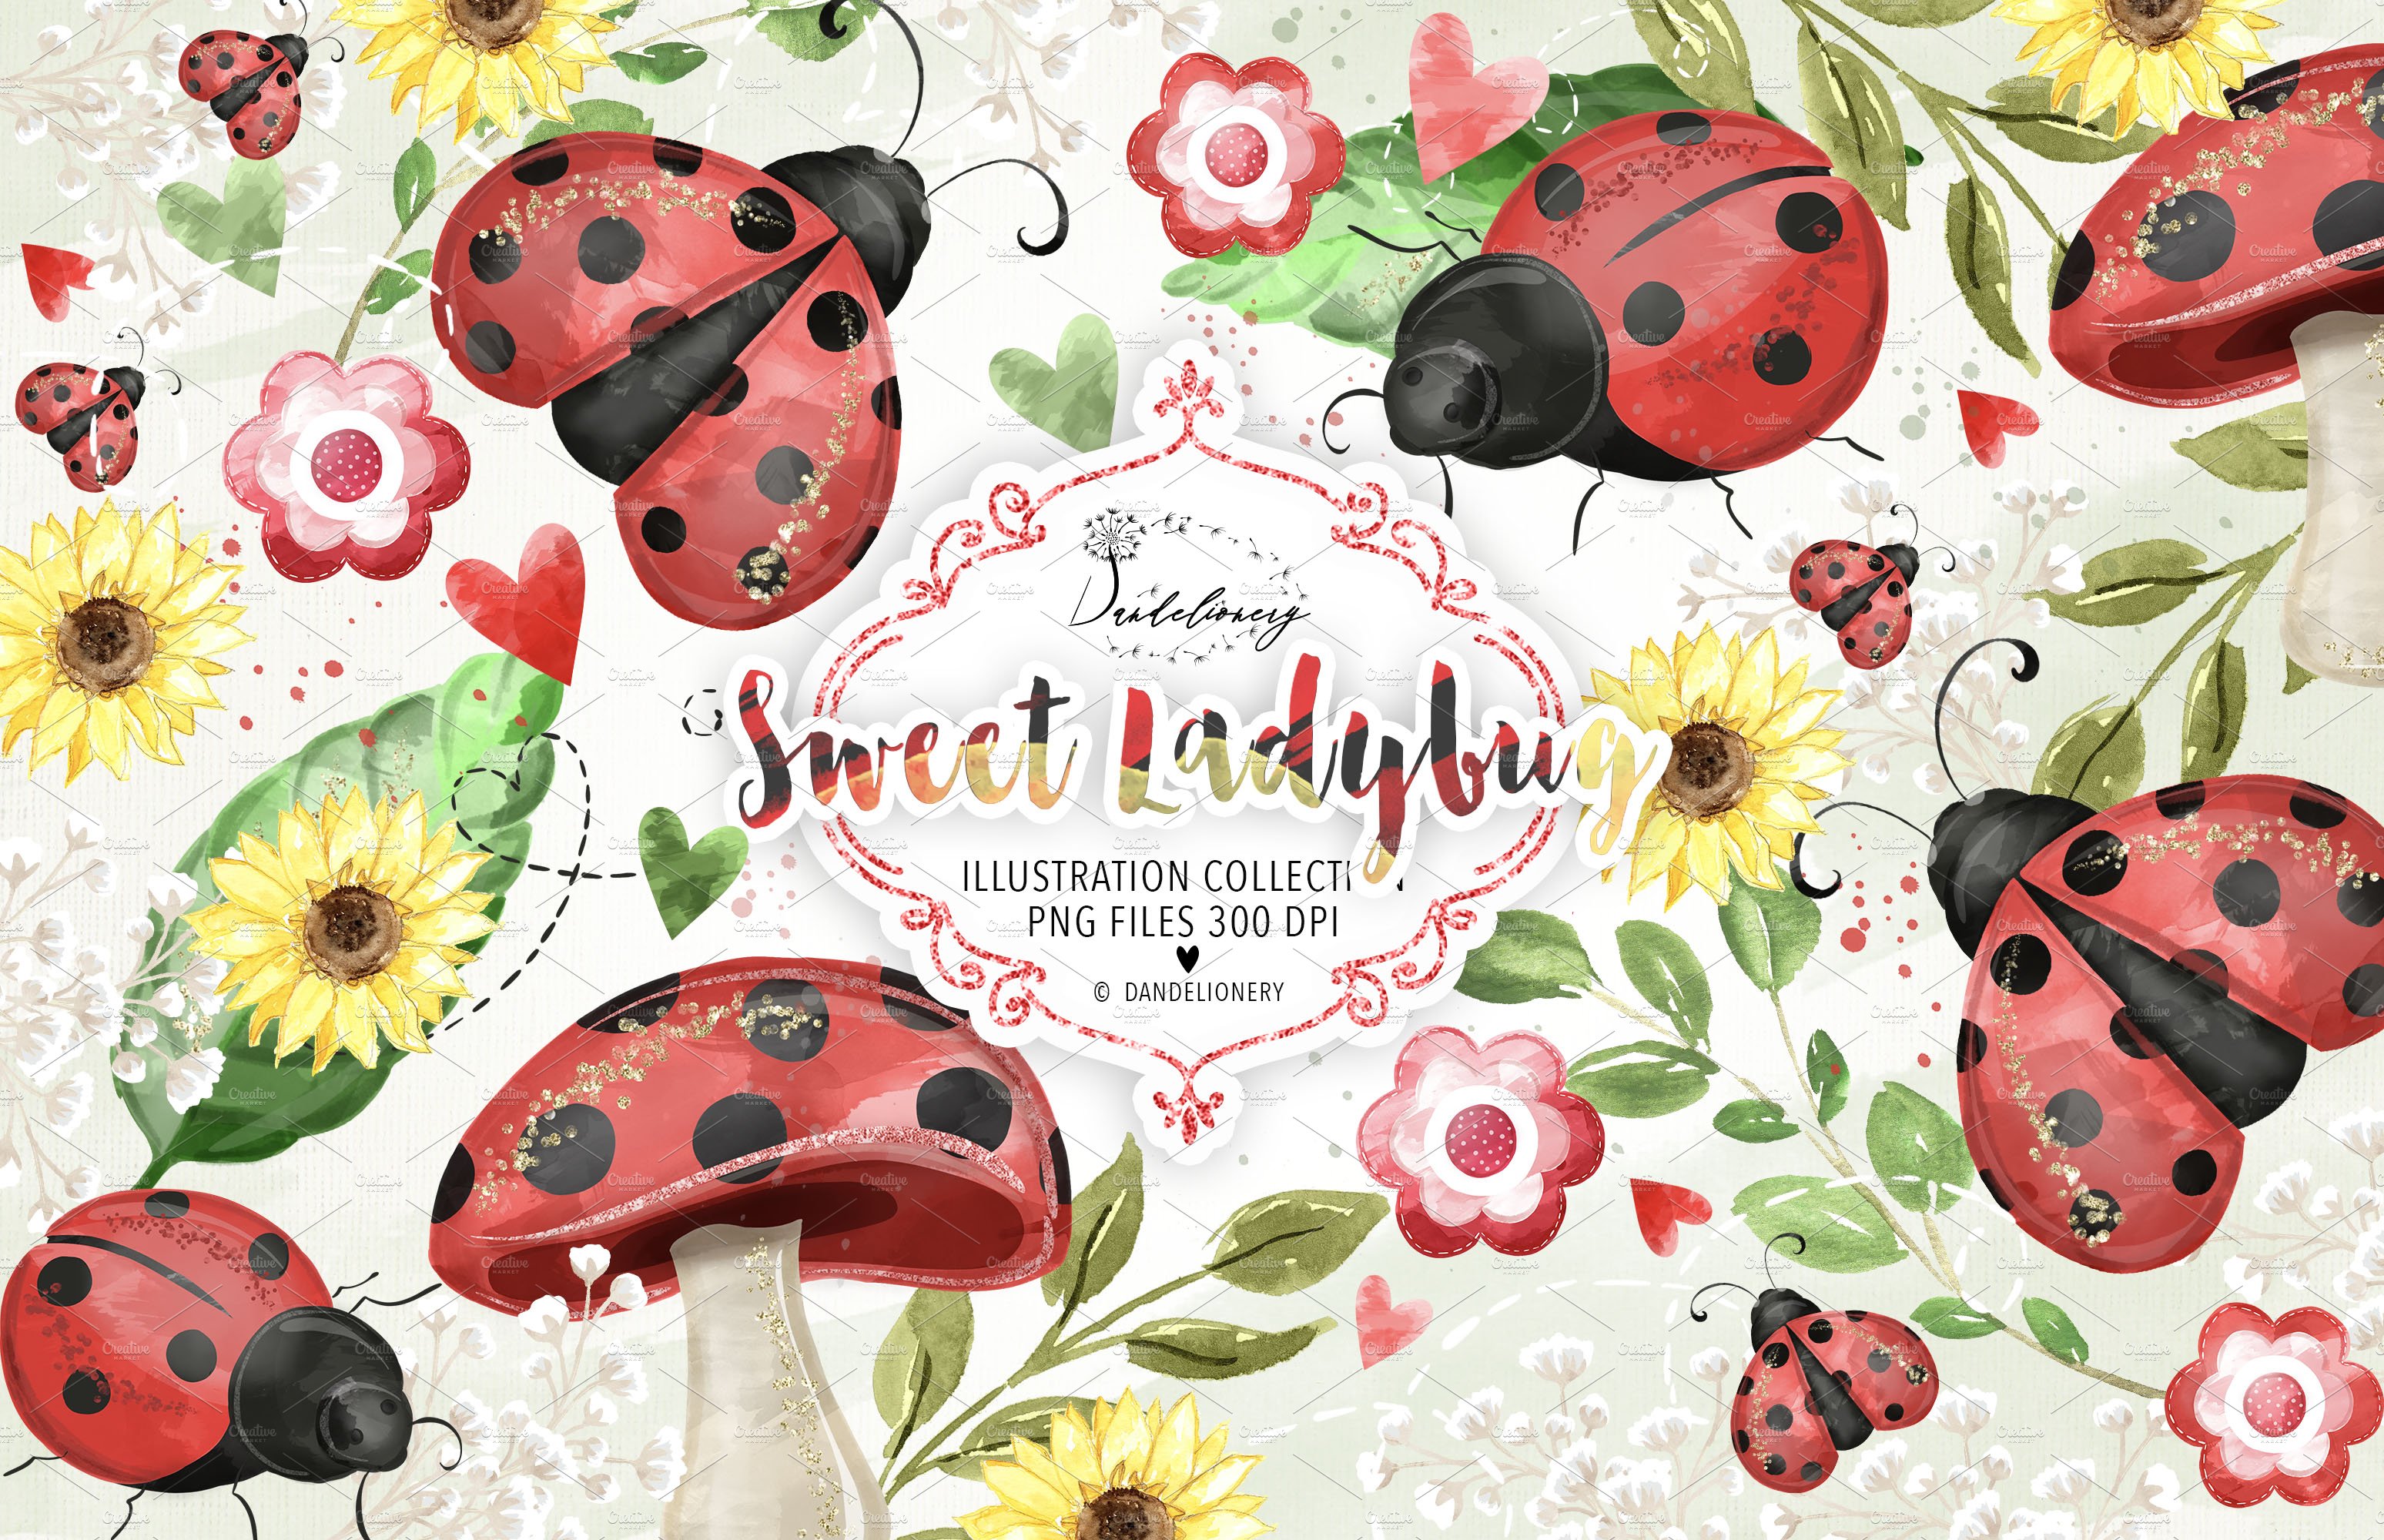 Sweet Ladybug design cover image.